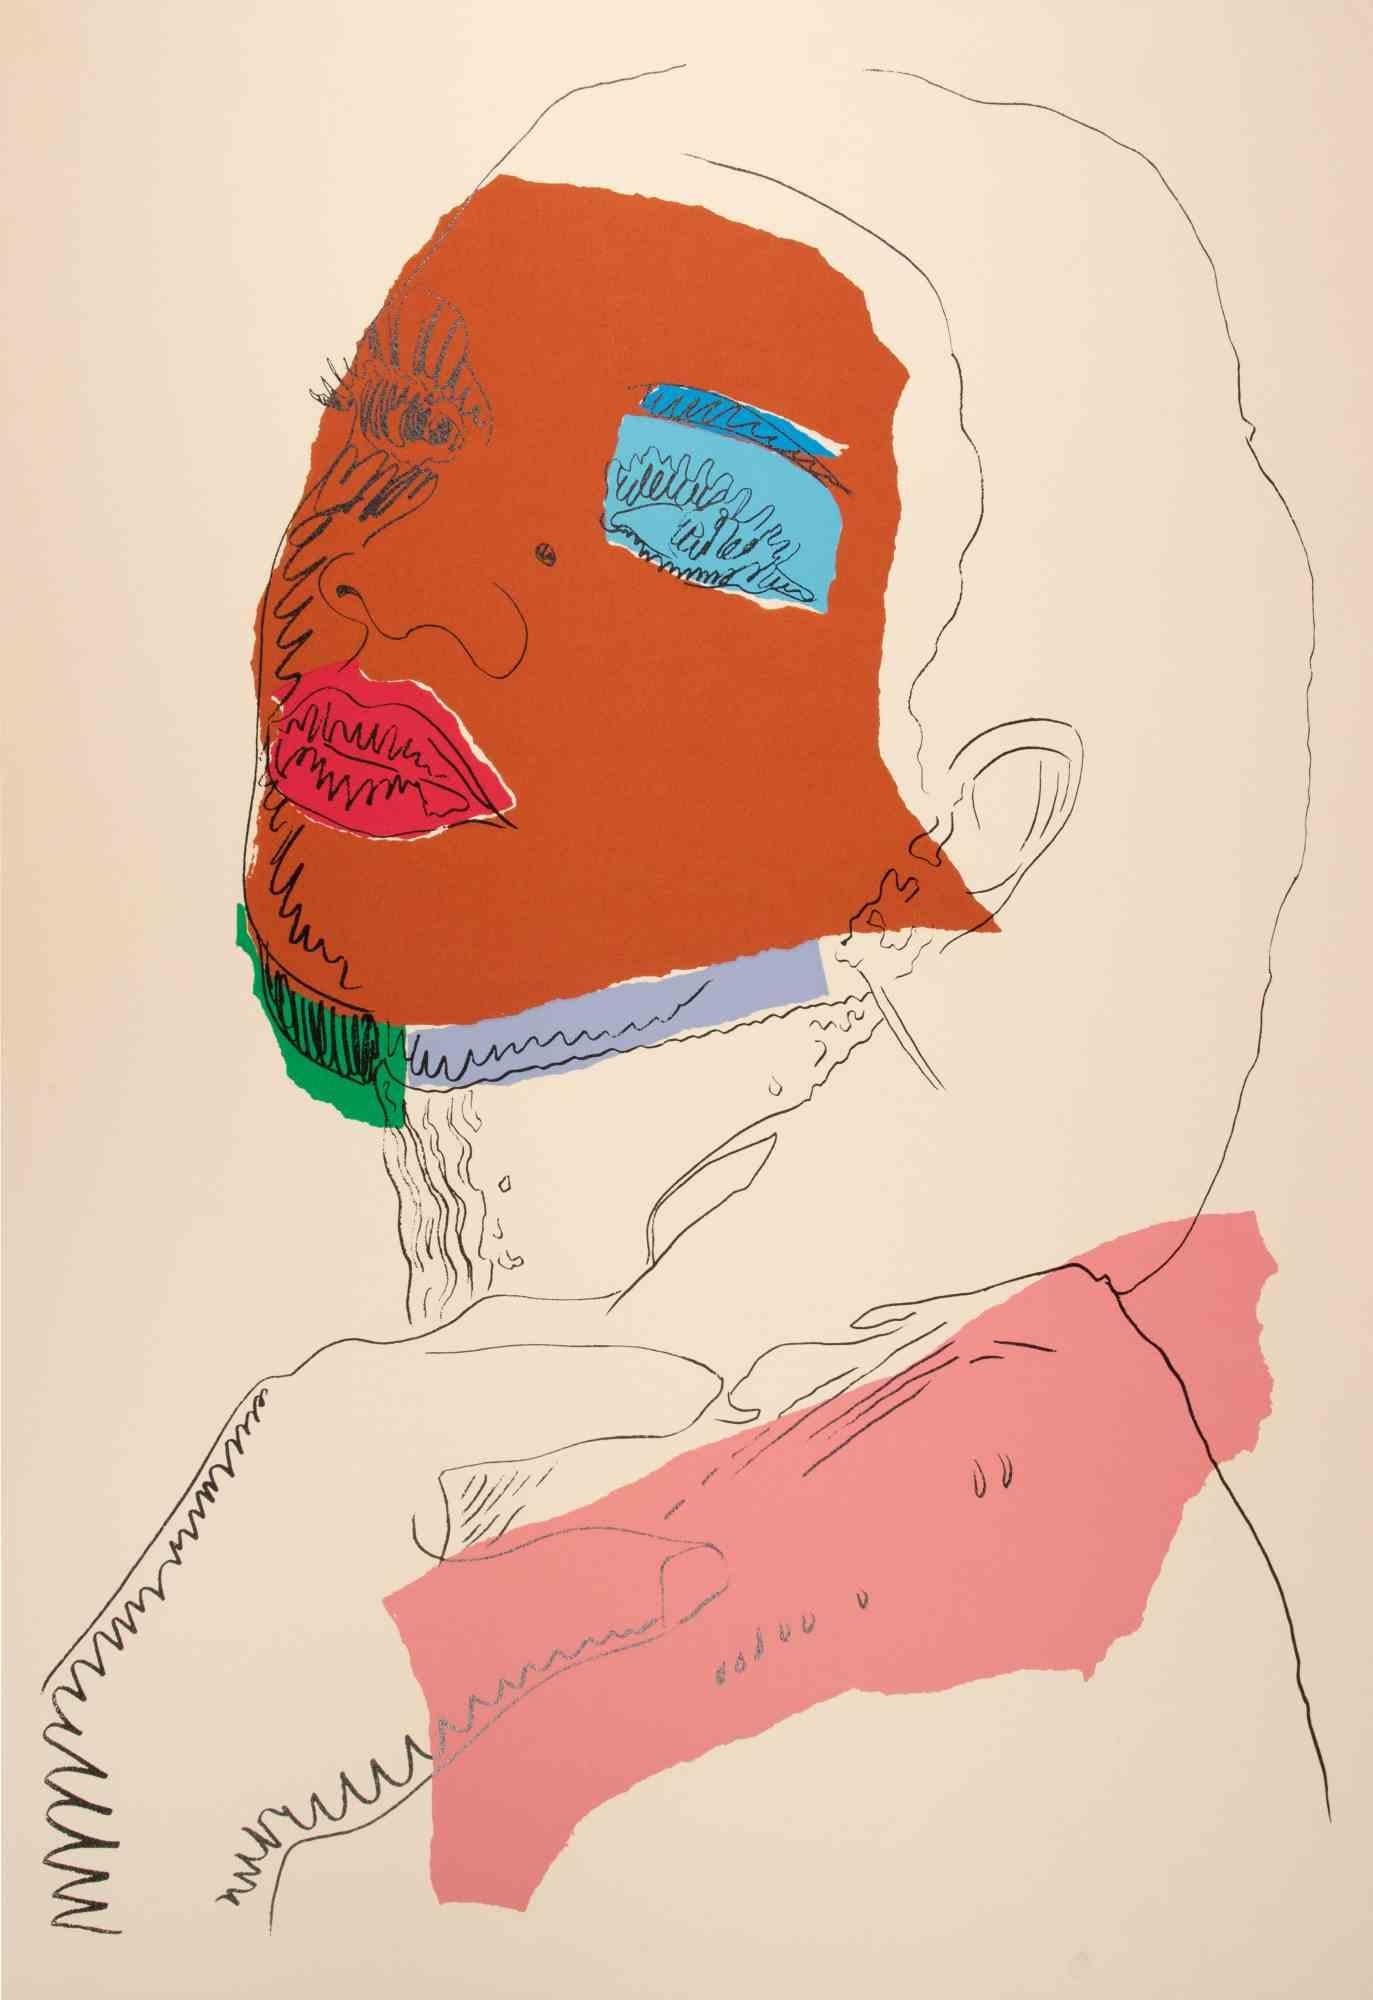 Ladies and Gentlemen ist ein farbiger Siebdruck, der 1975 von dem Pop-Künstler Andy Warhol realisiert wurde. 

Gemischter farbiger Siebdruck

Referenz: Feldman-Schellmann, II.127.

Signatur und Ausgabe mit Bleistift auf der Rückseite unten